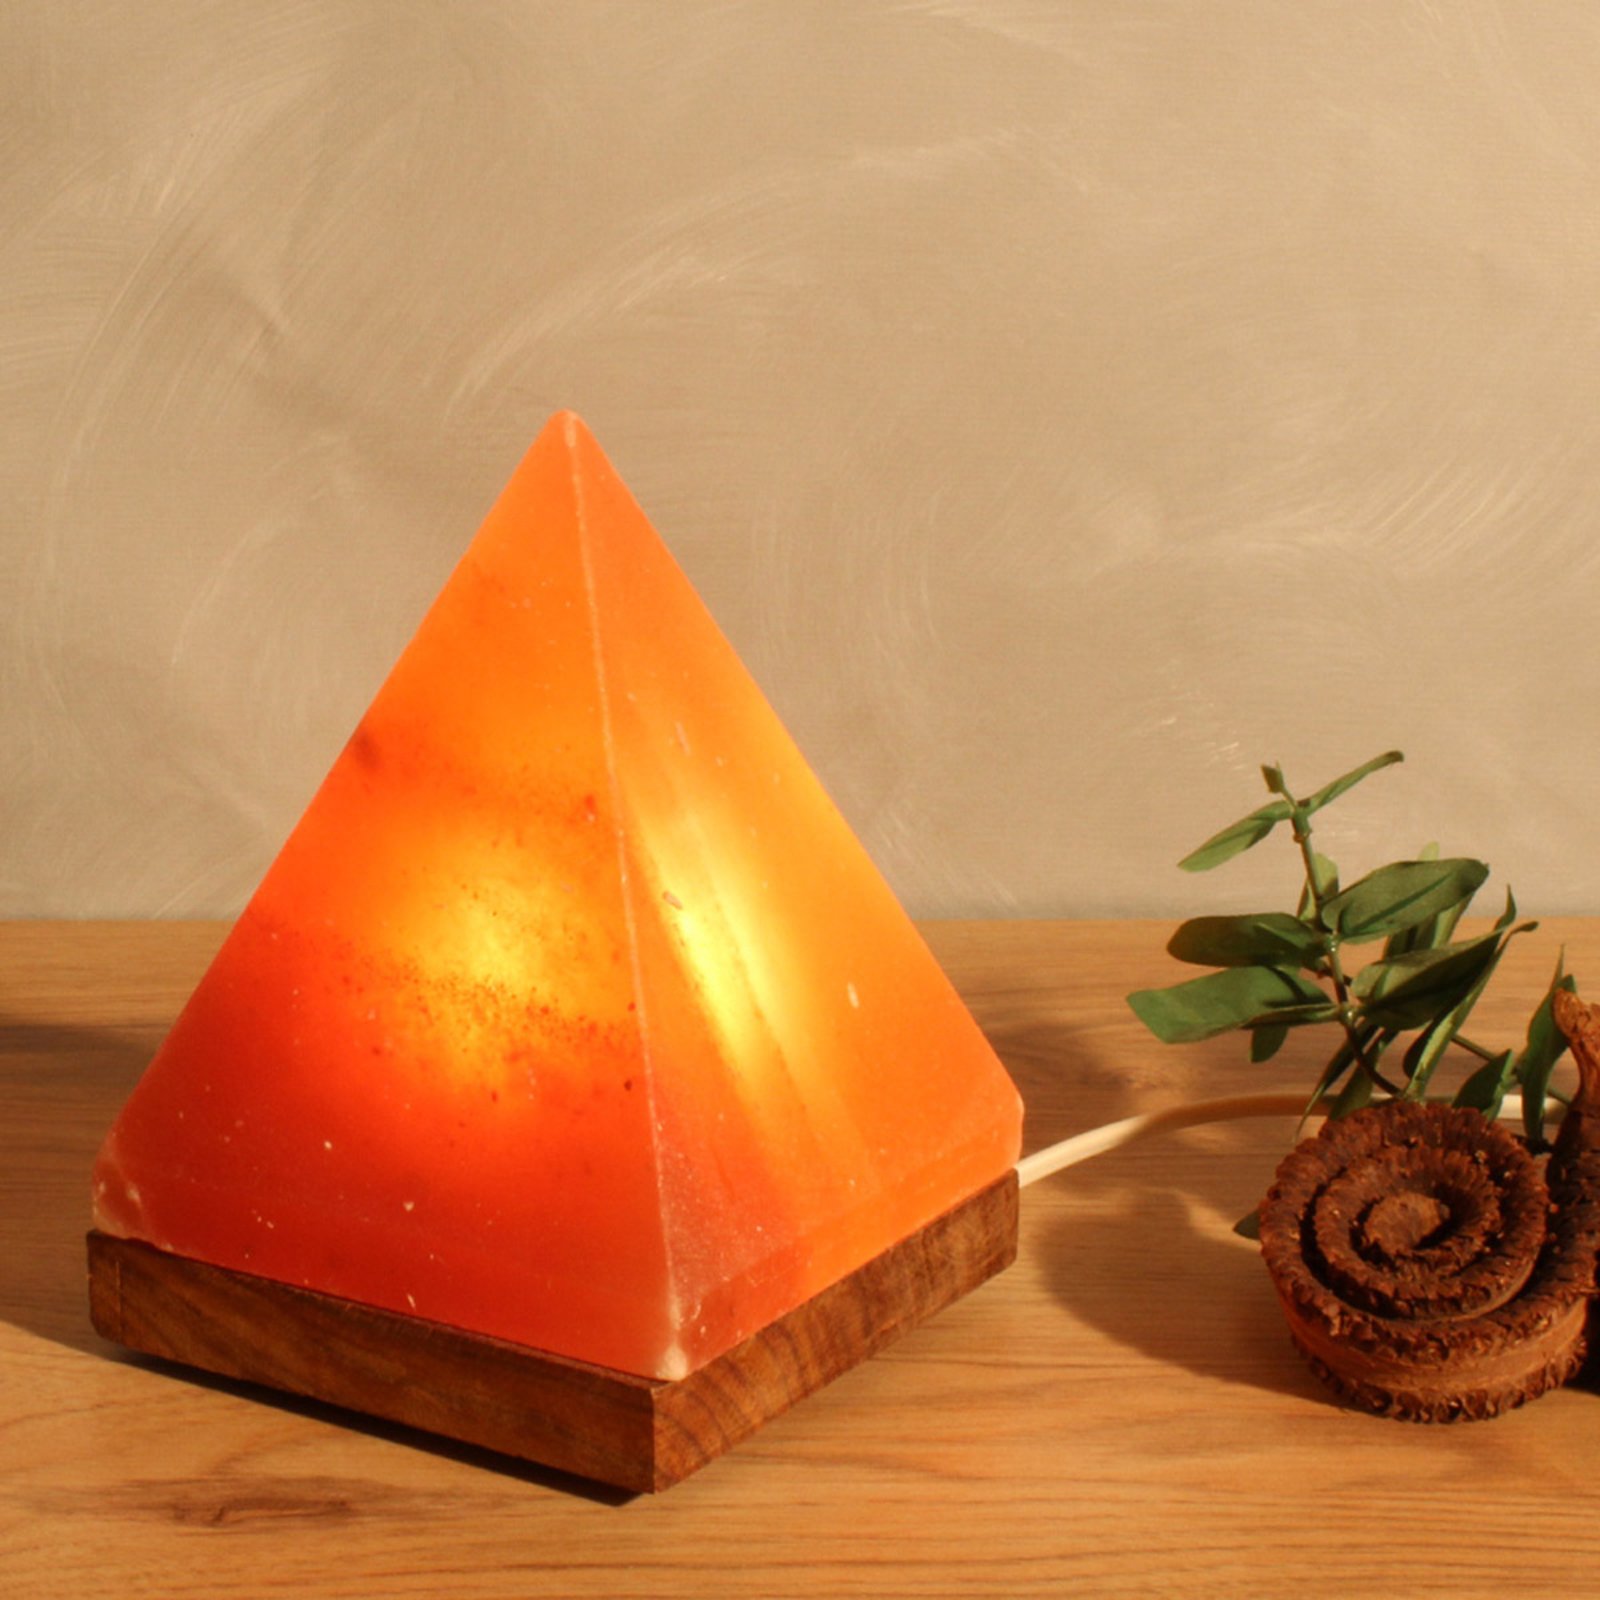 Zoutlamp Piramide met lamphouder, barnsteen